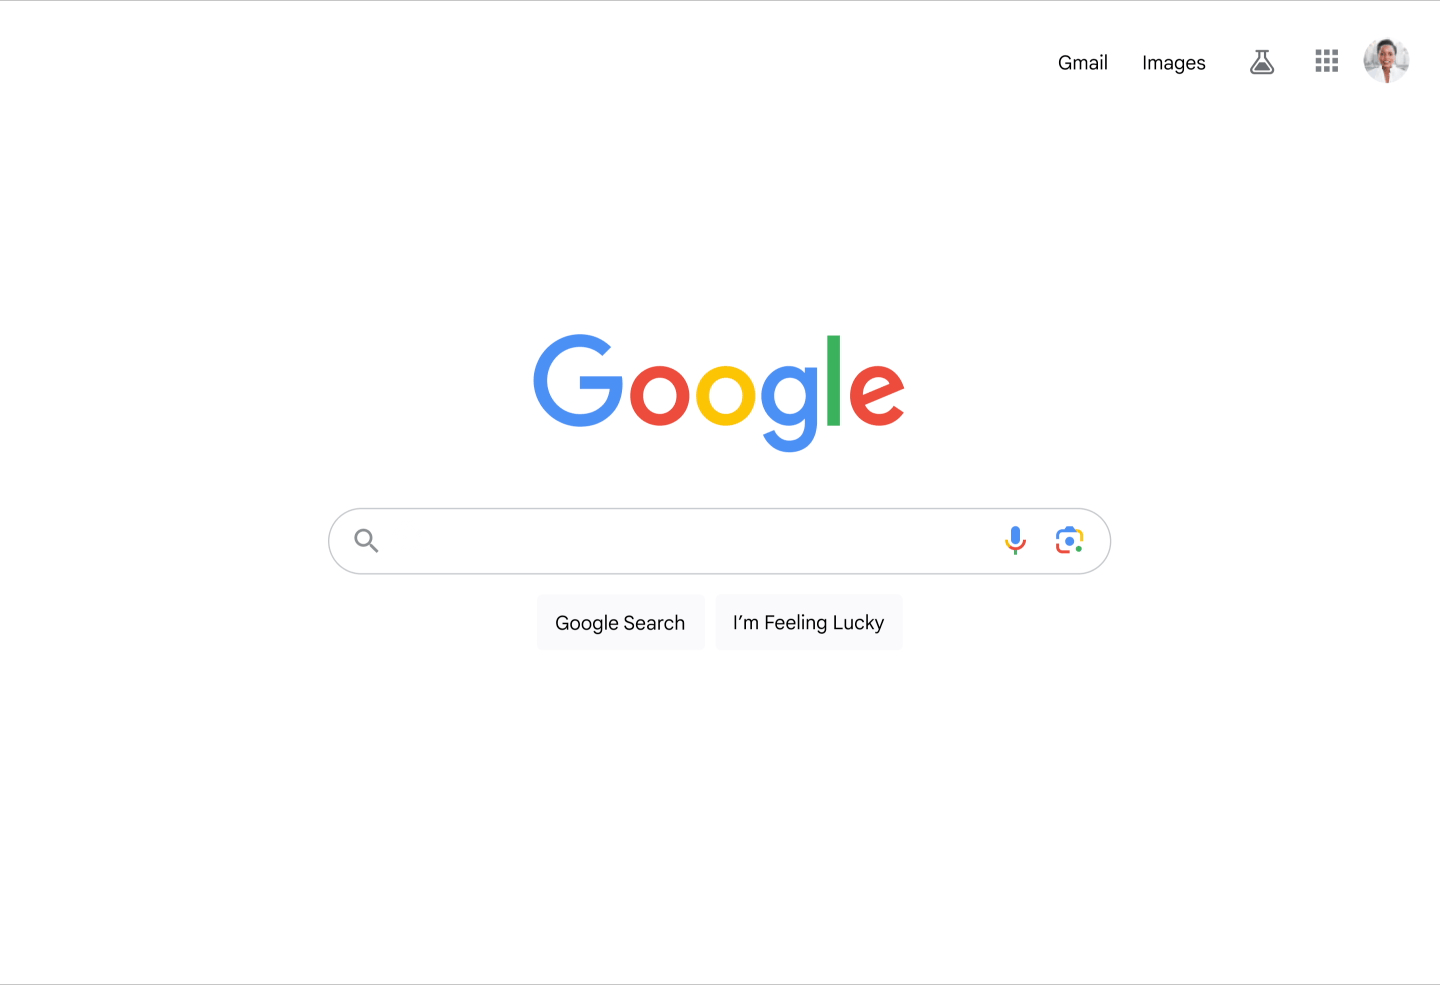 Generando imagenes en Google Search